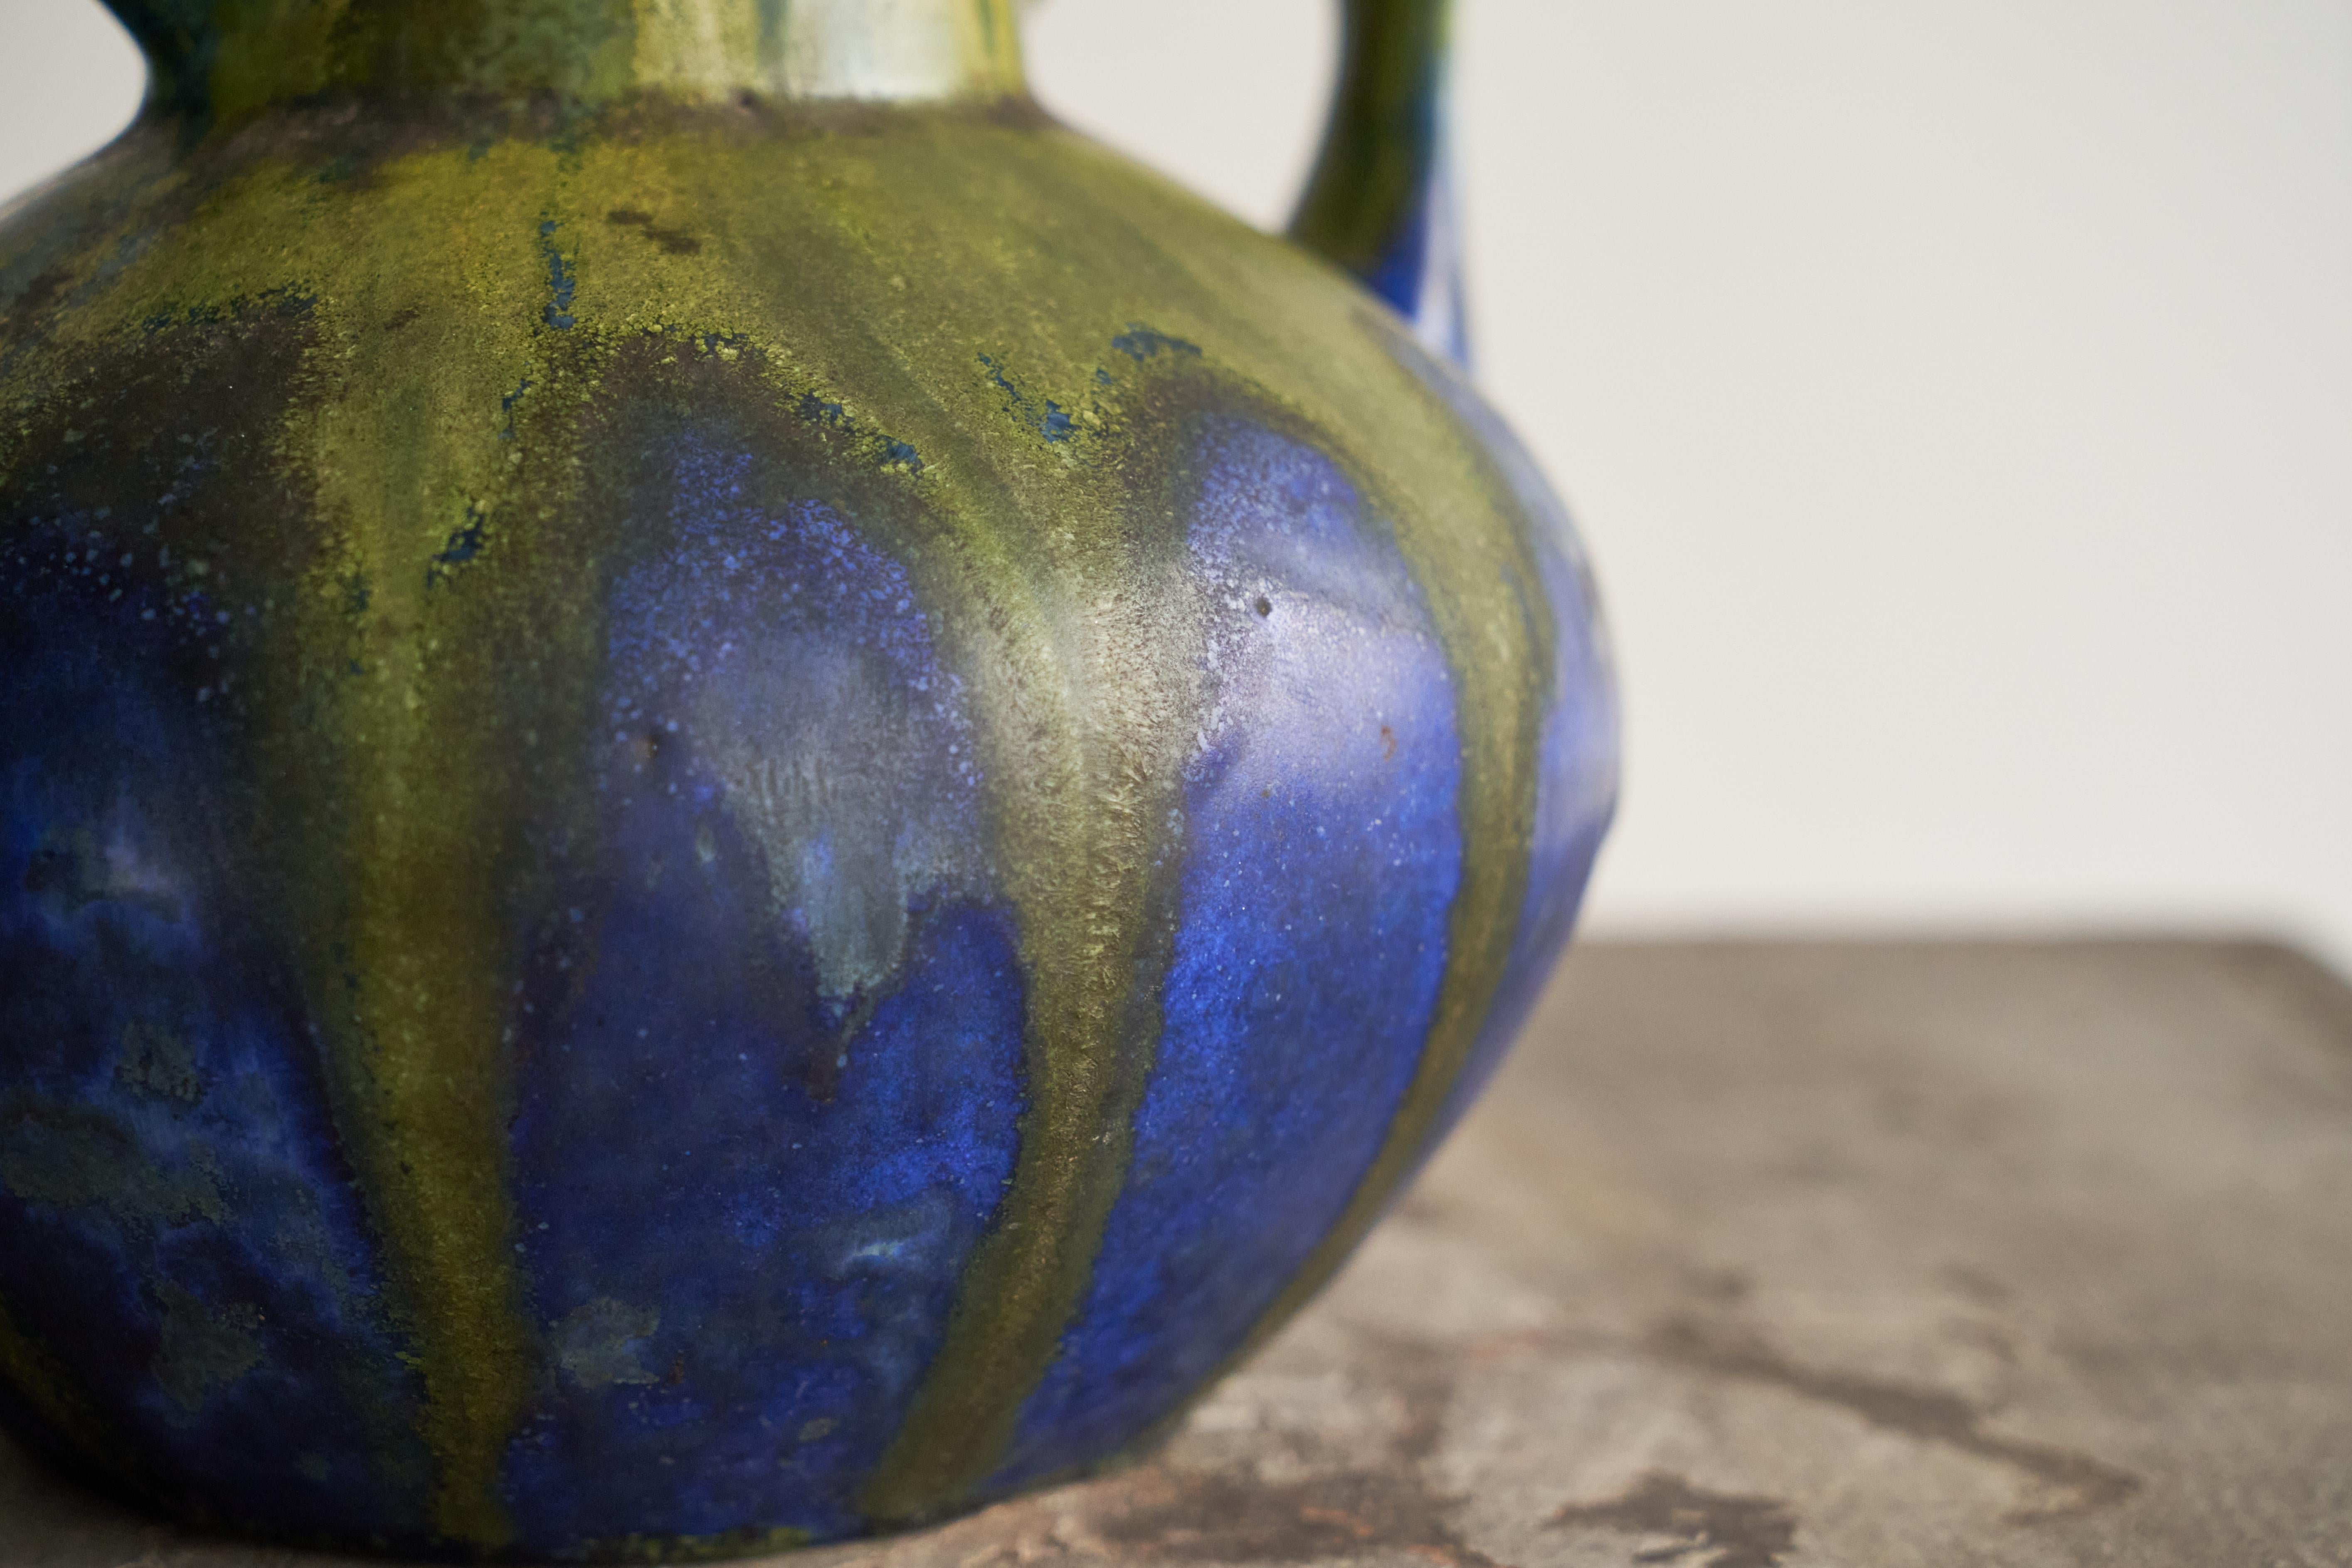 Gilbert Méténier Green and Blue Matt Glazed Studio Pottery Vase, France 1920s For Sale 2